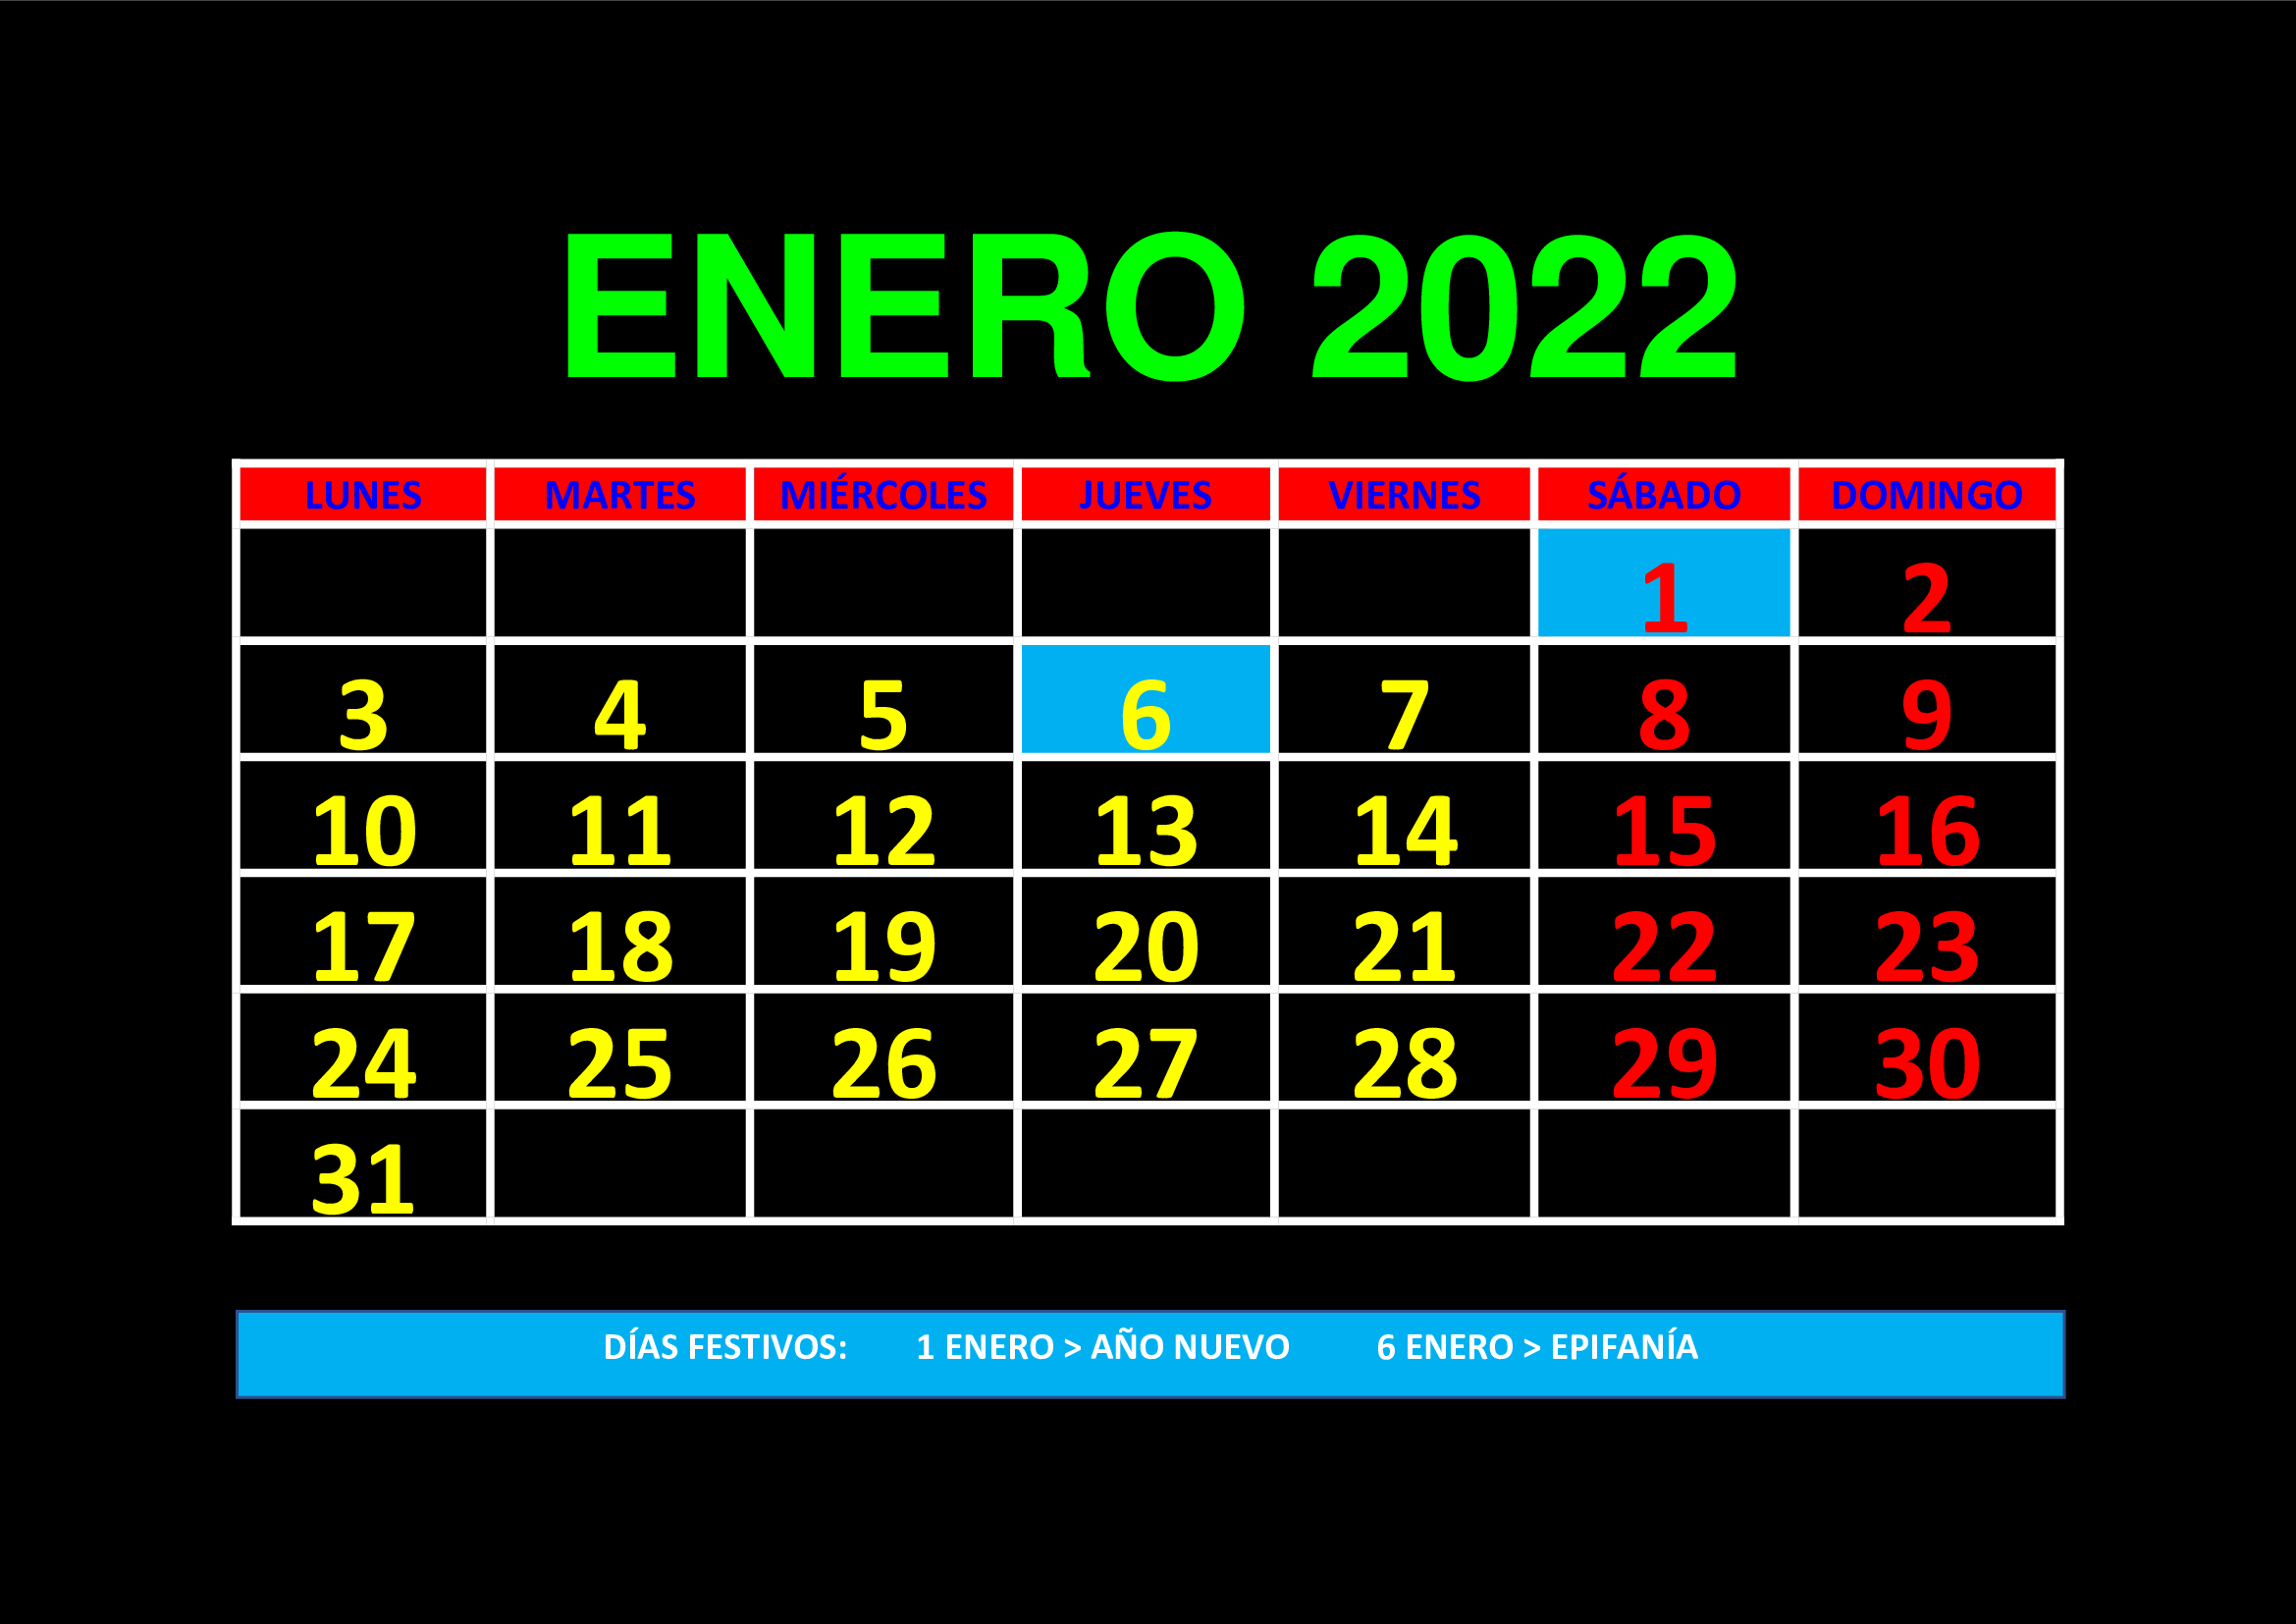 La imagen muestra el mes de enero de 2022